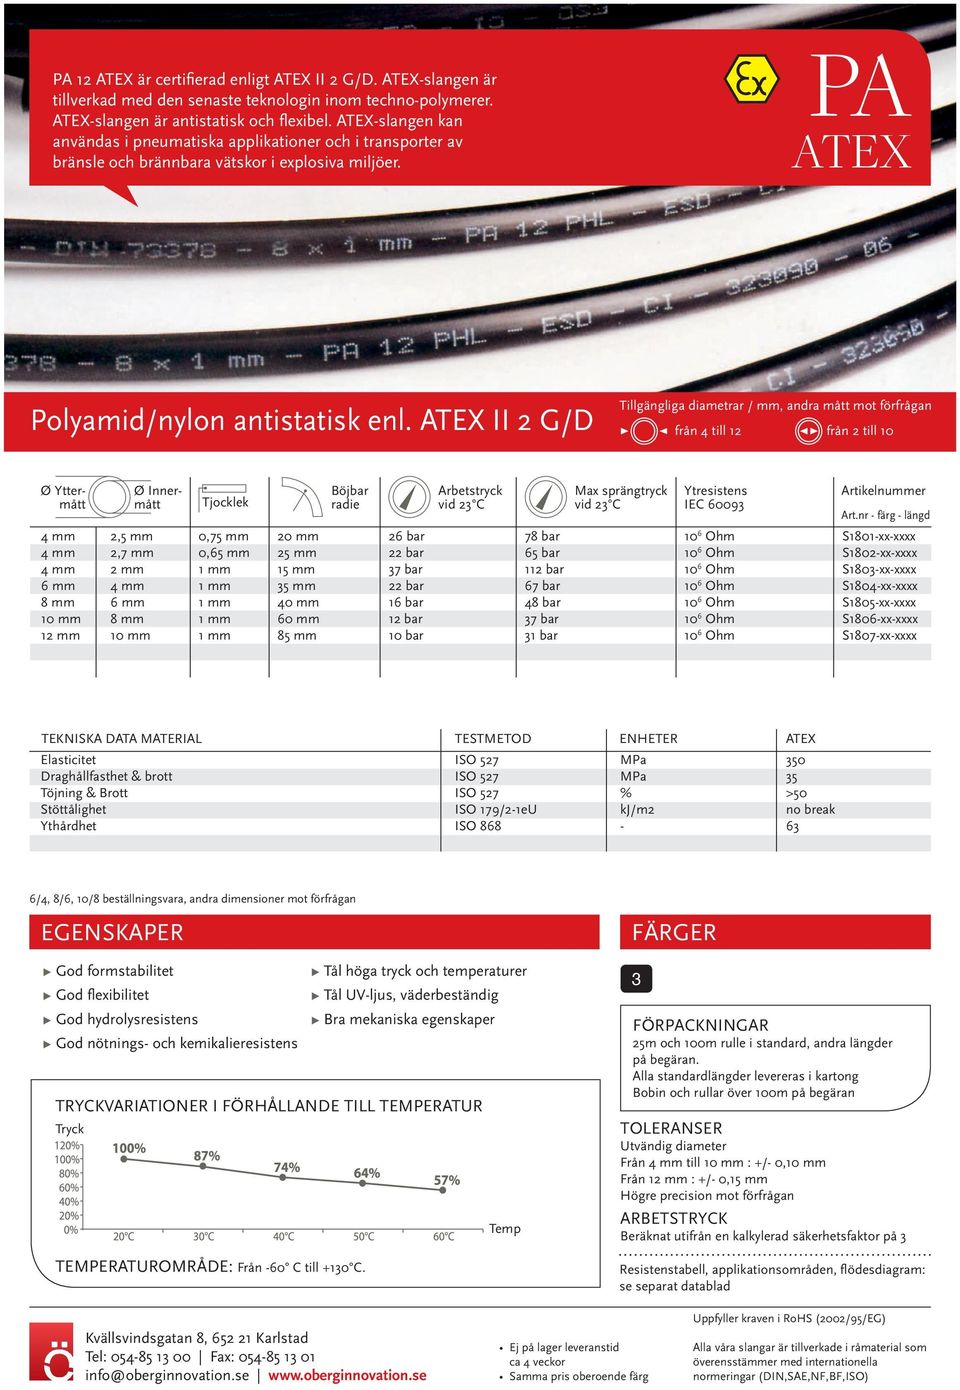 ATEX II 2 /D från 4 till 12 från 2 till 10 öjbar radie Arbetstryck Max sprängtryck Ytresistens IEC 60093 Art.